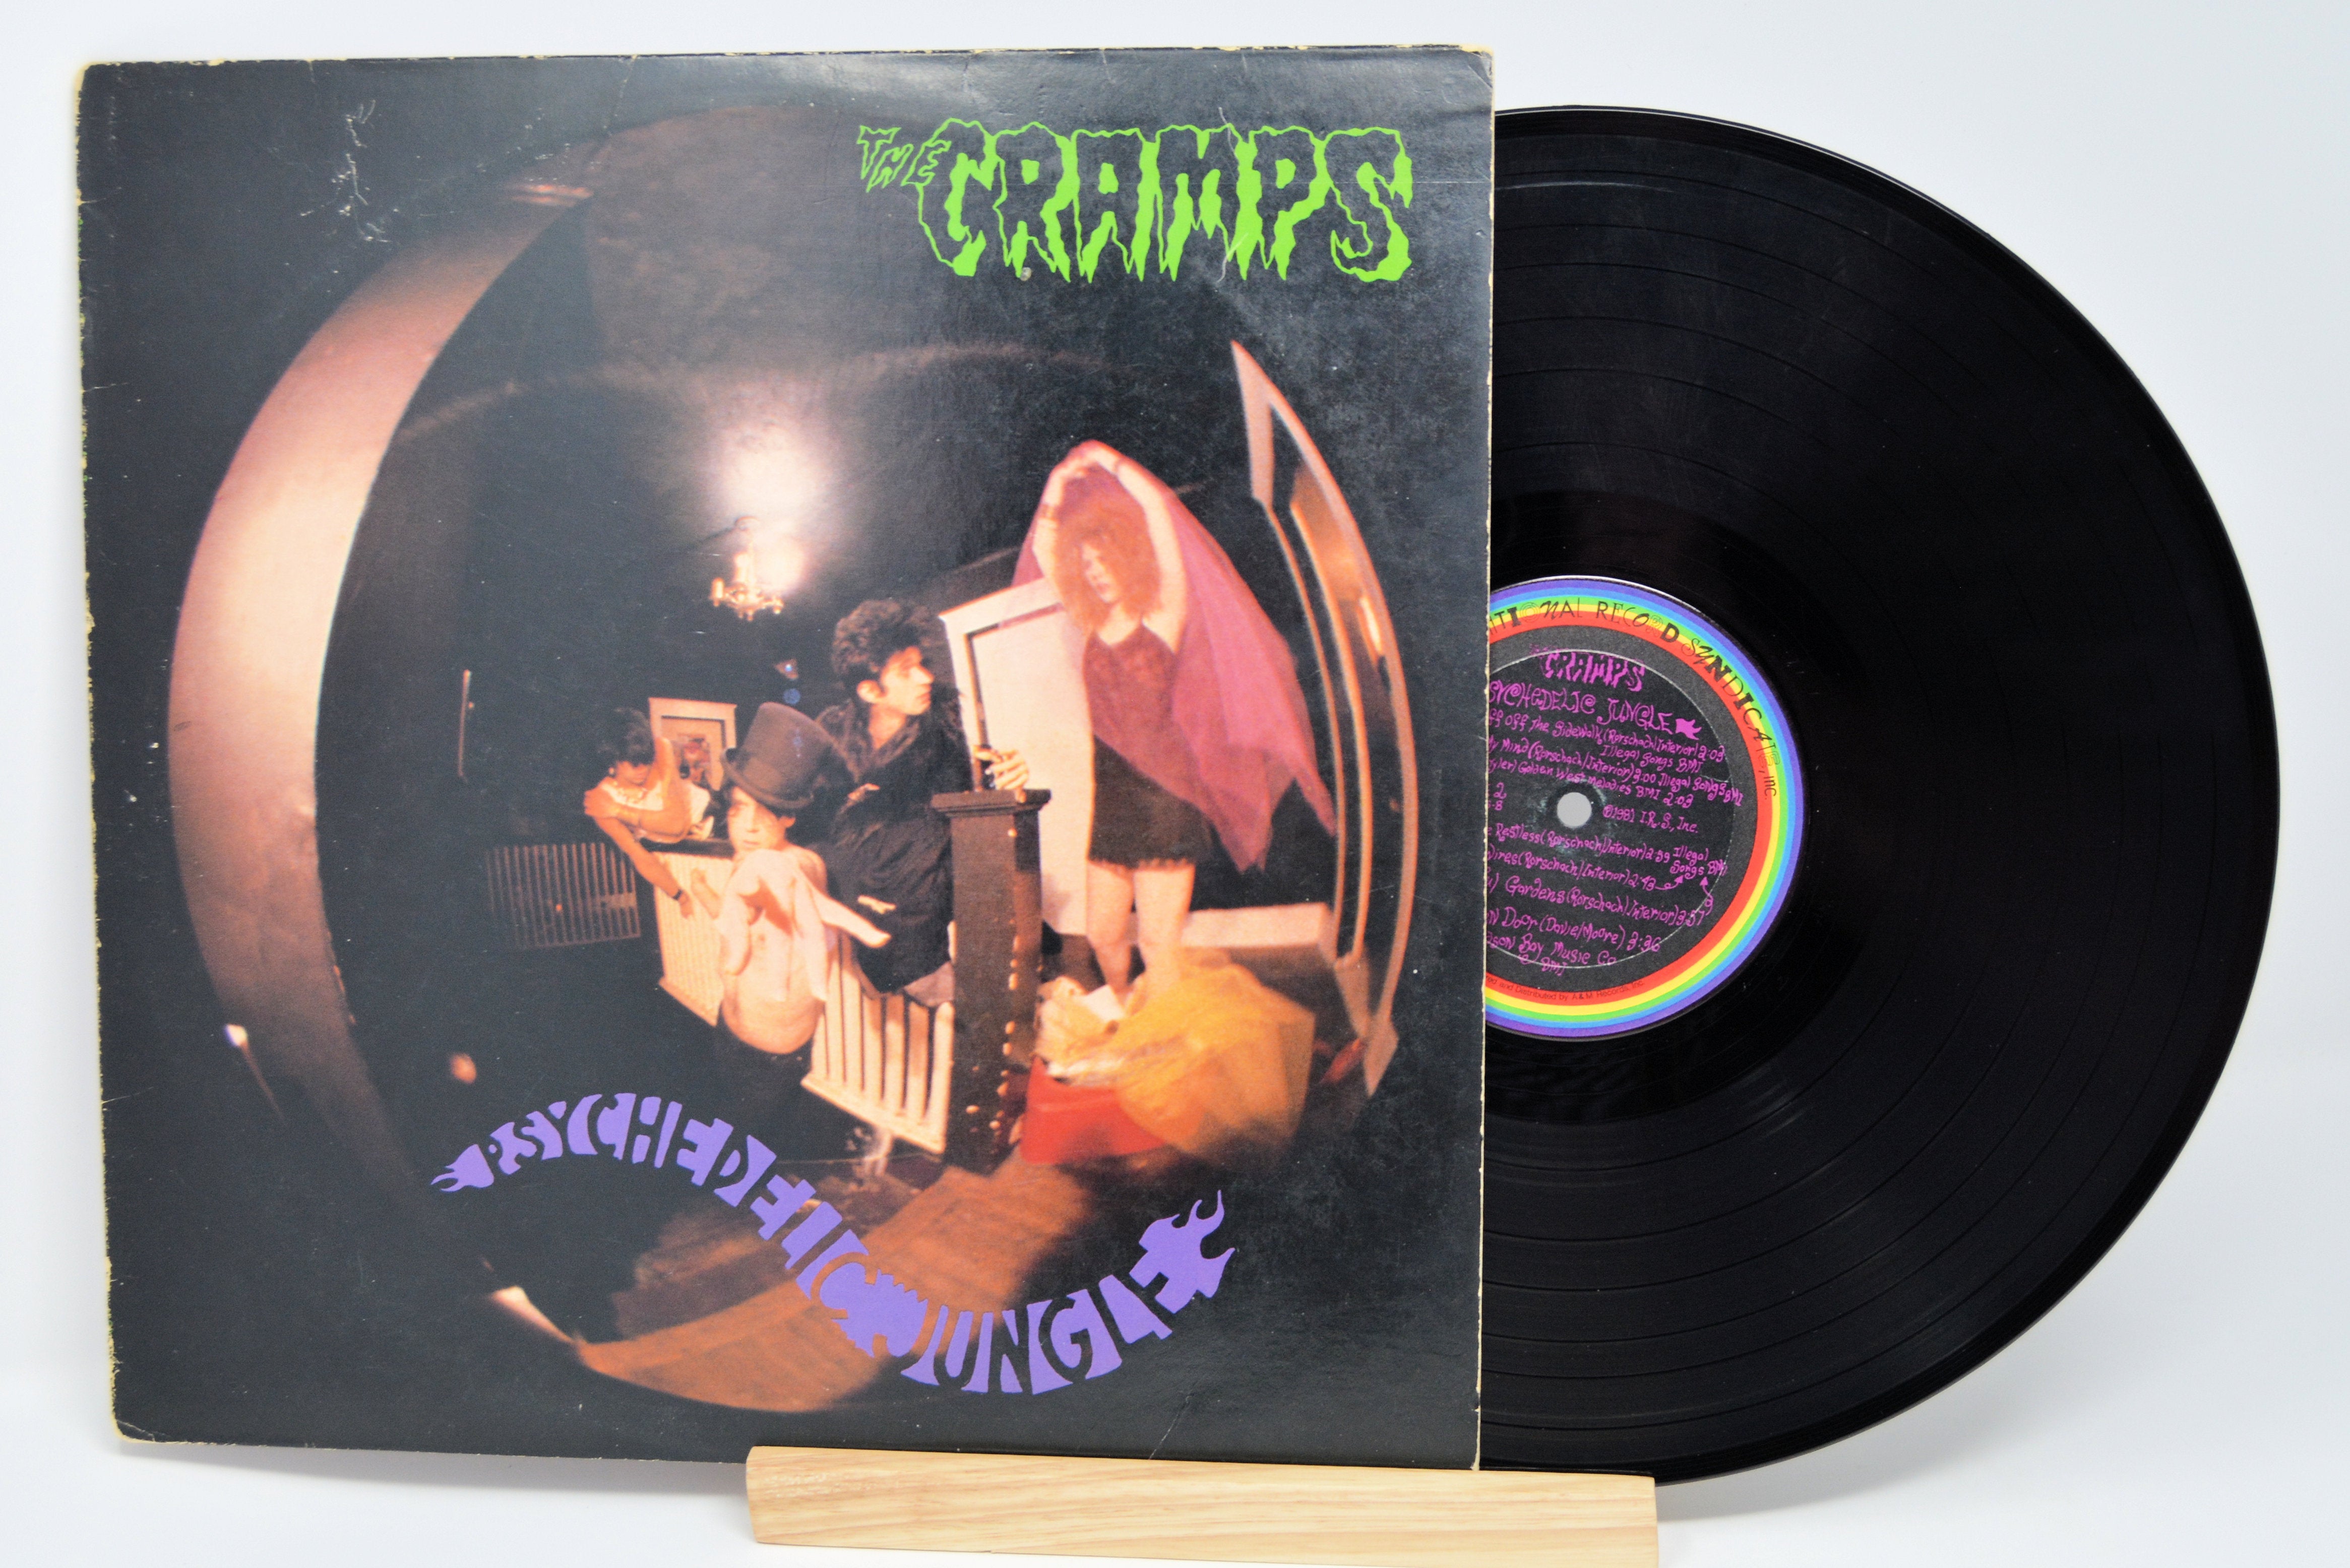 Cramps - Psychedelic Jungle, Vinyl Record LP, IRS SP 70016 – Joe's Albums